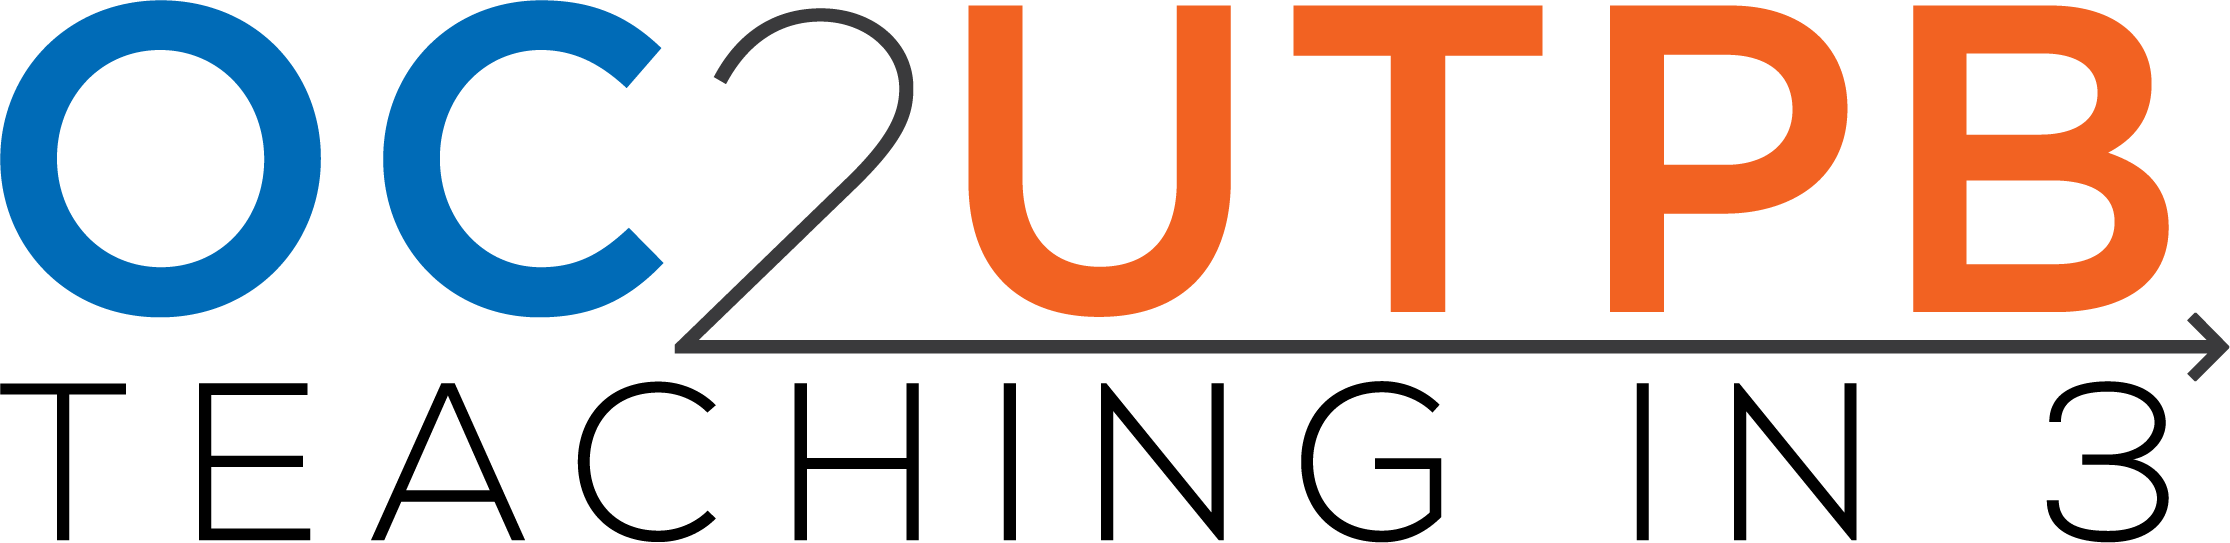 OC2UTPB-T3-Logo.png